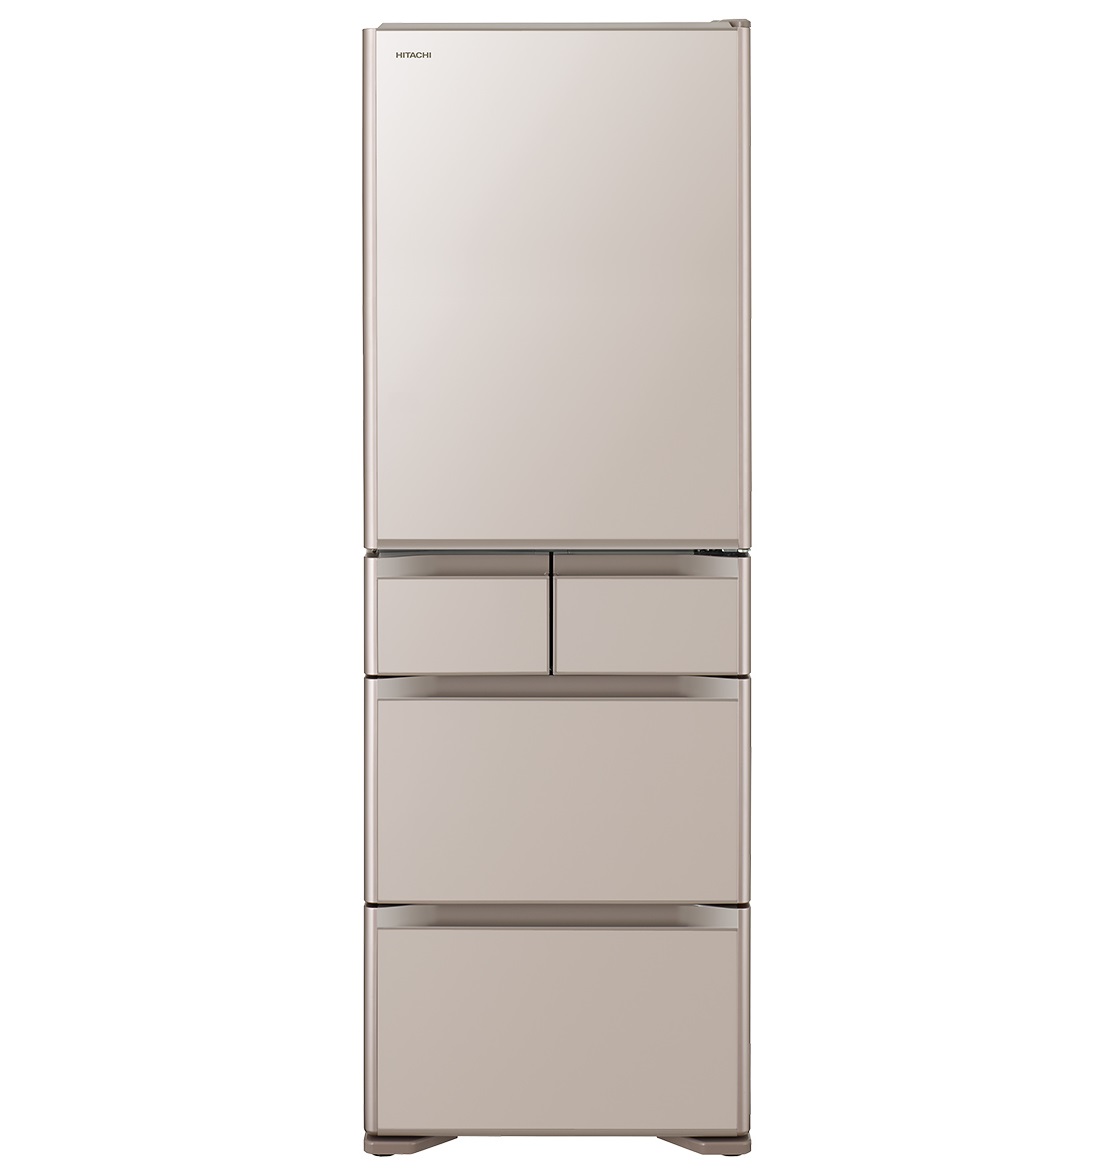 【2019年版】日立の冷蔵庫「真空チルド」おすすめ3モデルを徹底比較！家電のプロが解説 | GetNavi web ゲットナビ